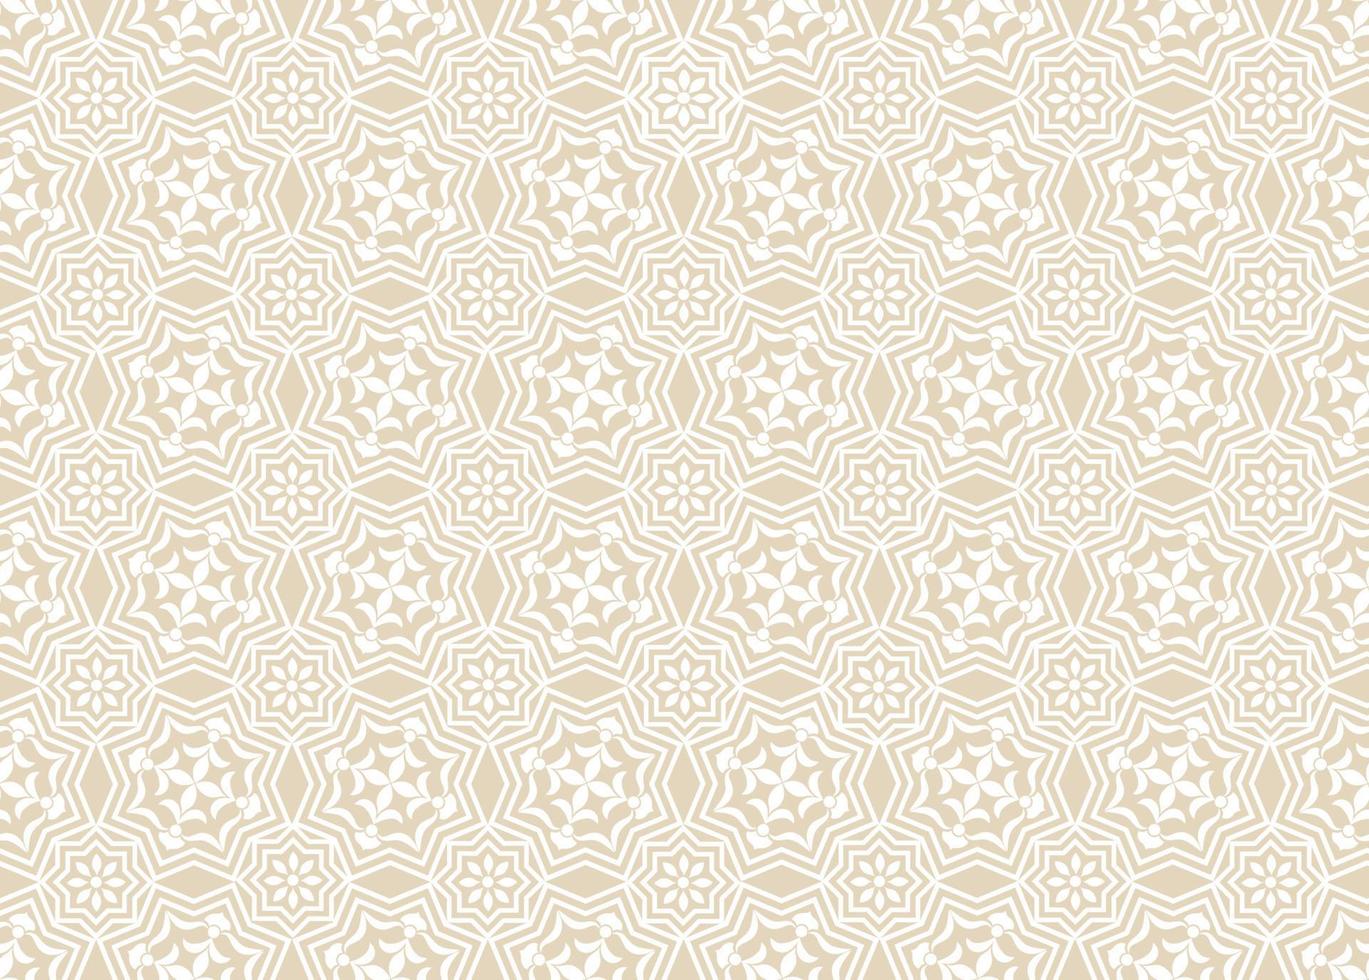 patrón sin fisuras de mosaico abstracto. elegante adorno árabe de línea floral en estilo geométrico musulmán vector